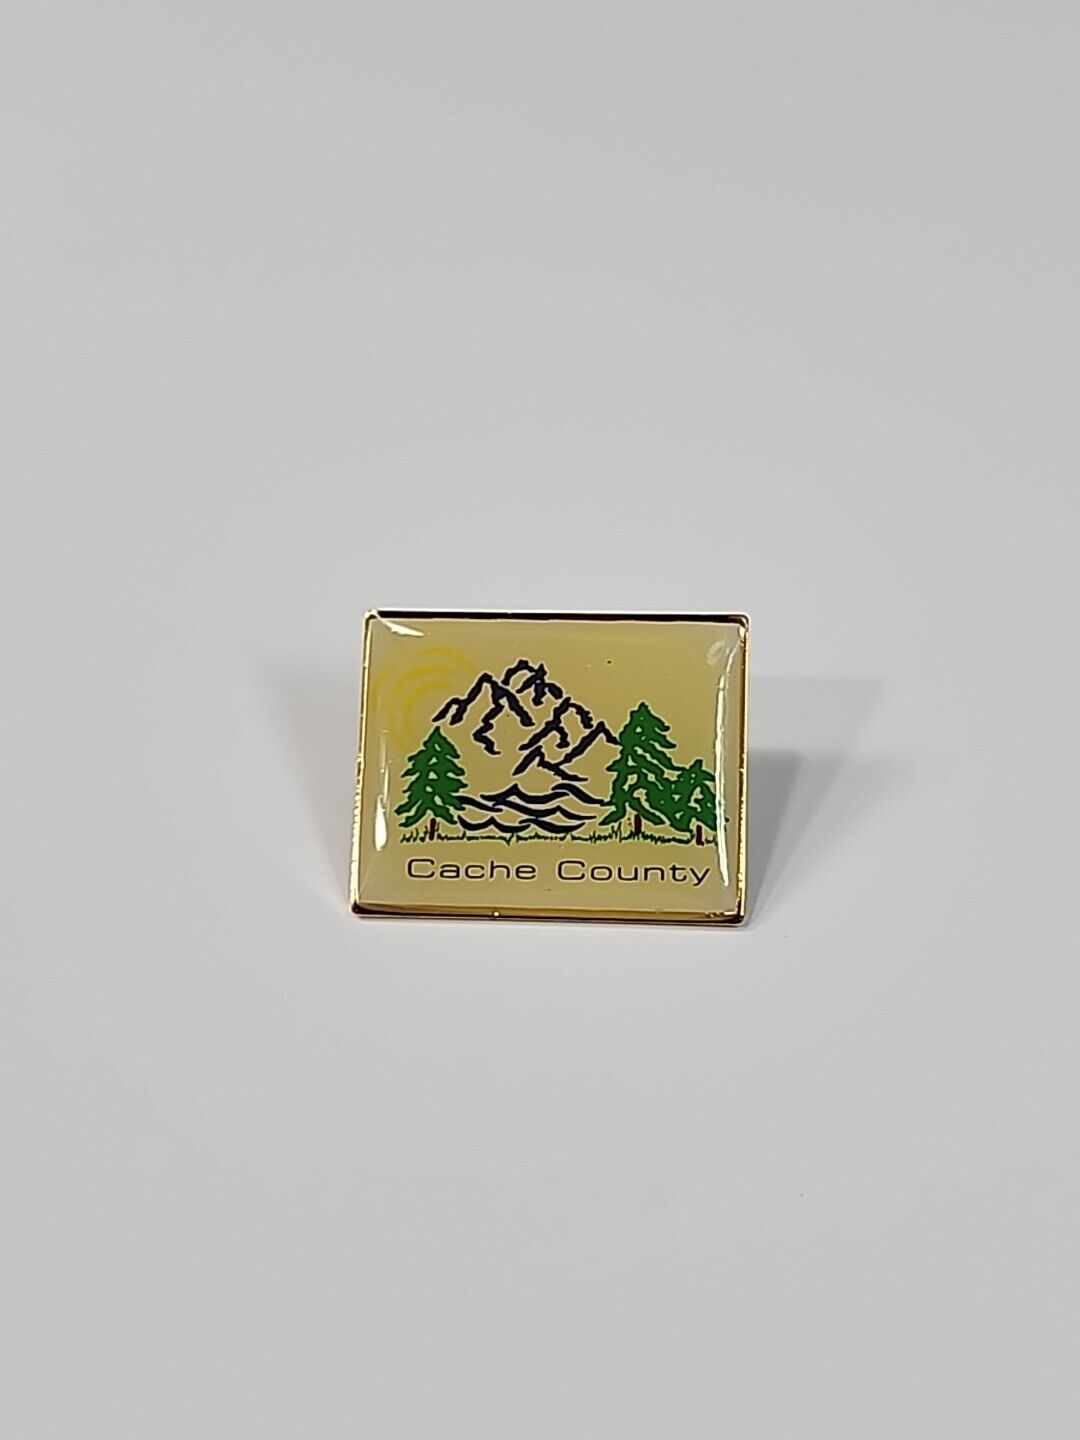 Cache County Utah Souvenir Lapel Pin